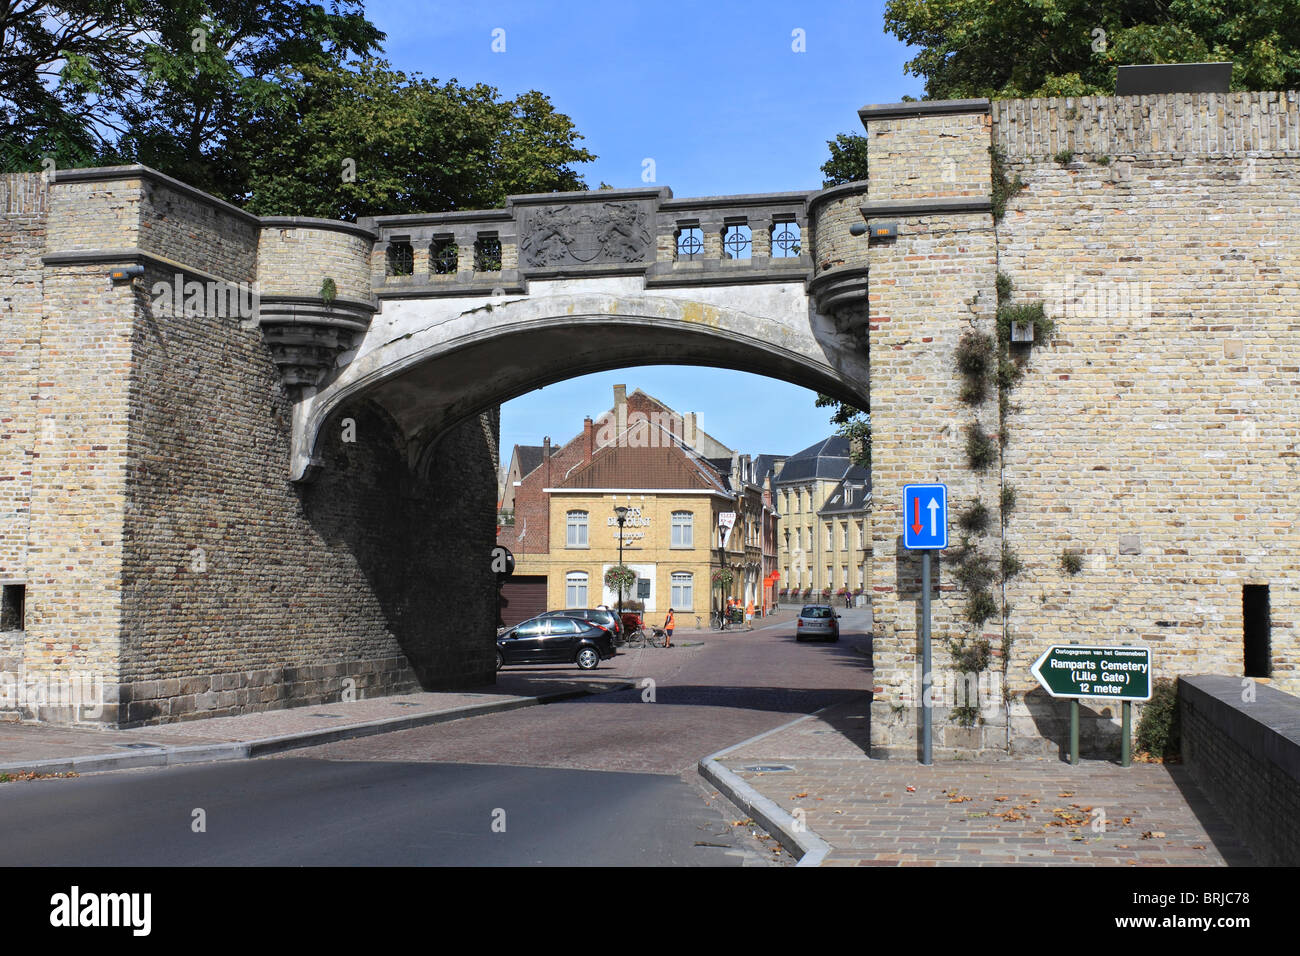 La porte de Lille partie des remparts fortifications autour de la ville d' Ypres (Ieper) en Belgique Photo Stock - Alamy